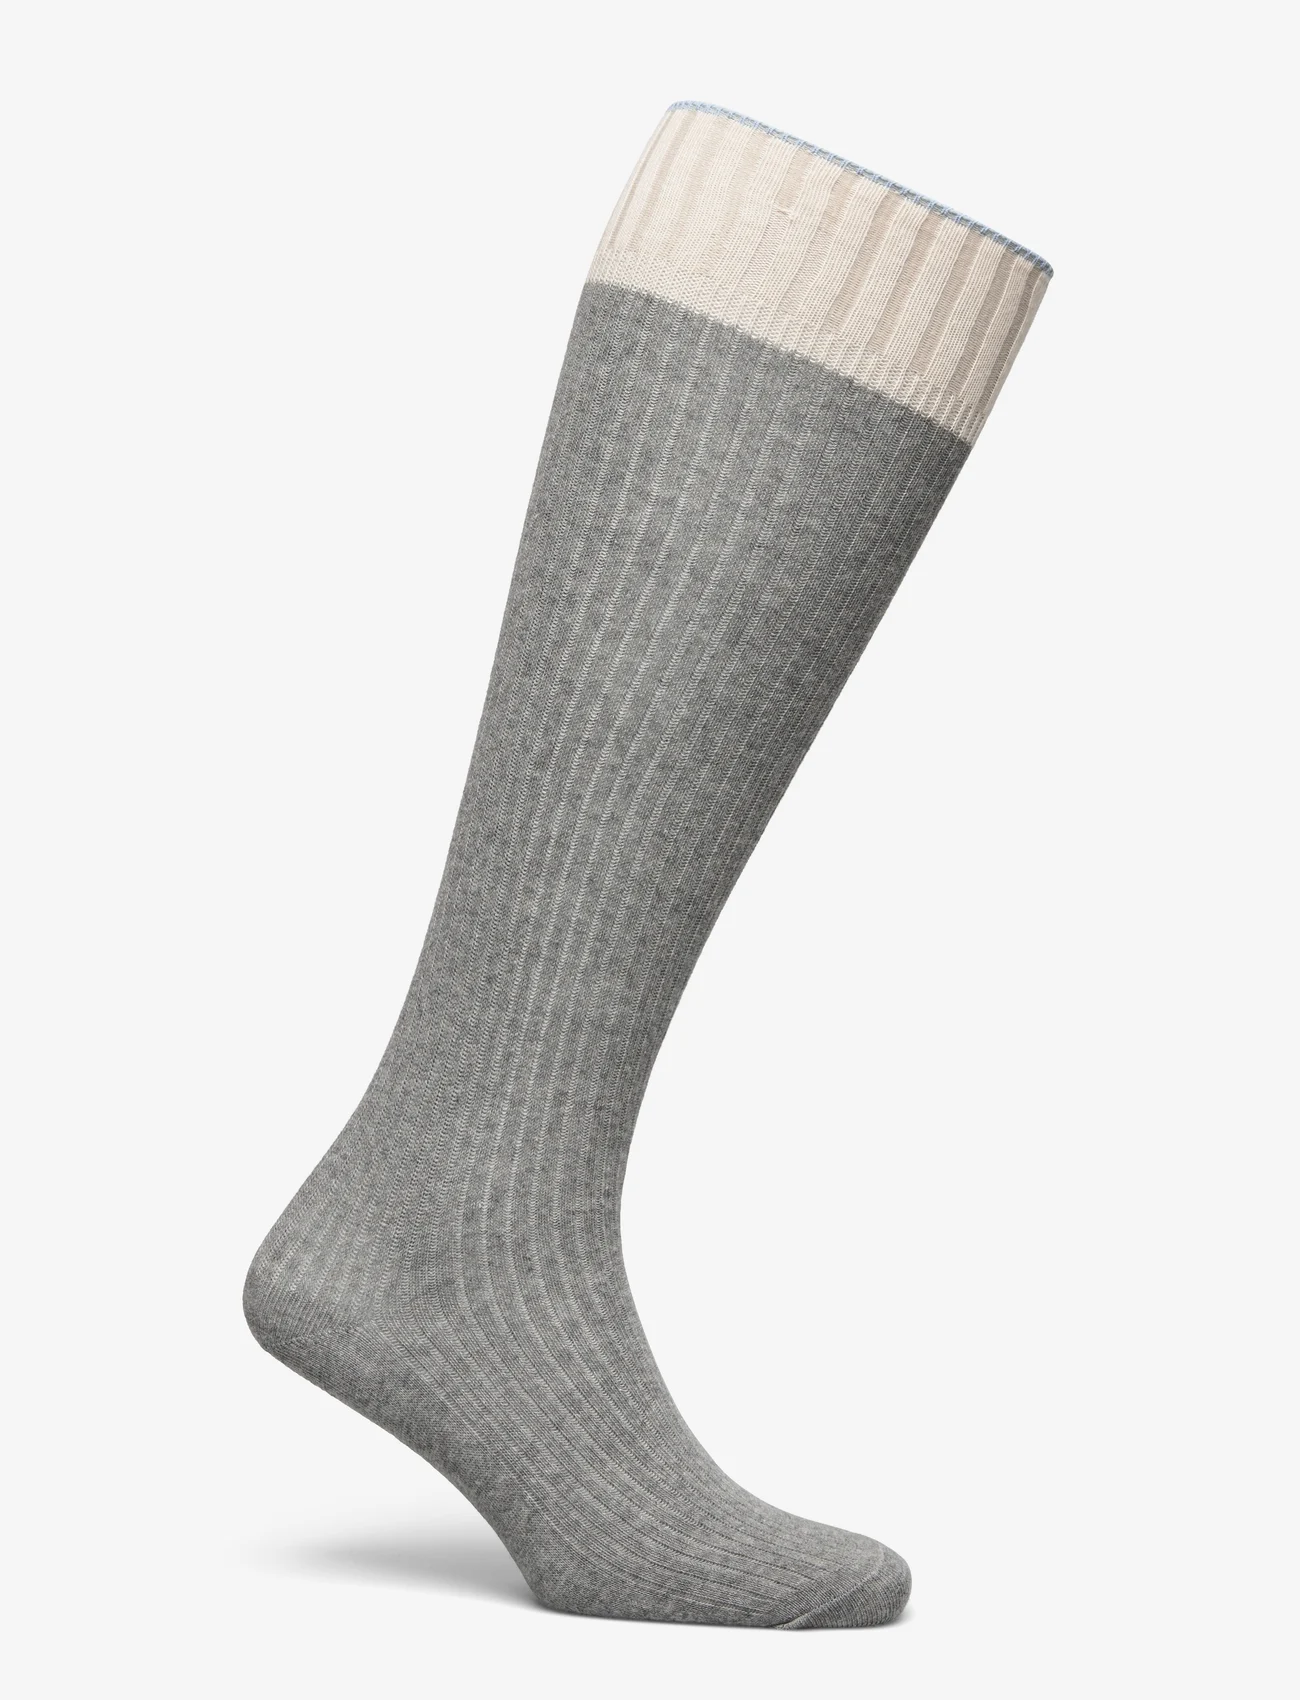 mp Denmark - Sara knee socks - madalaimad hinnad - grey melange - 1